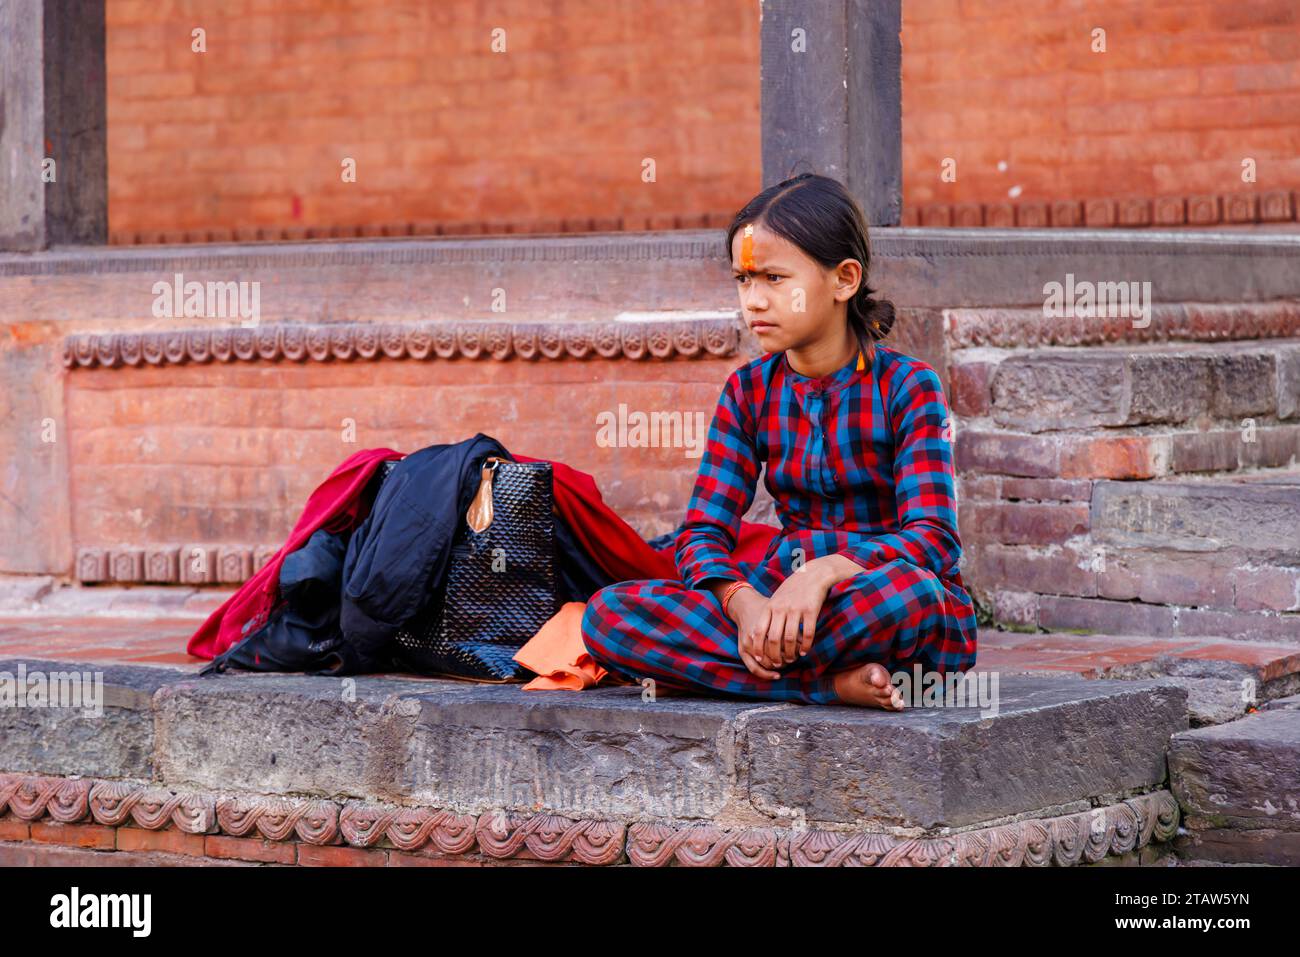 Ein heimisches, dunkelhaariges, hinduistisches Mädchen mit einer orangen Tilaka-Markierung auf der Stirn sitzt im Kreuz im Pashupatinath-Tempel in Kathmandu, Nepal Stockfoto